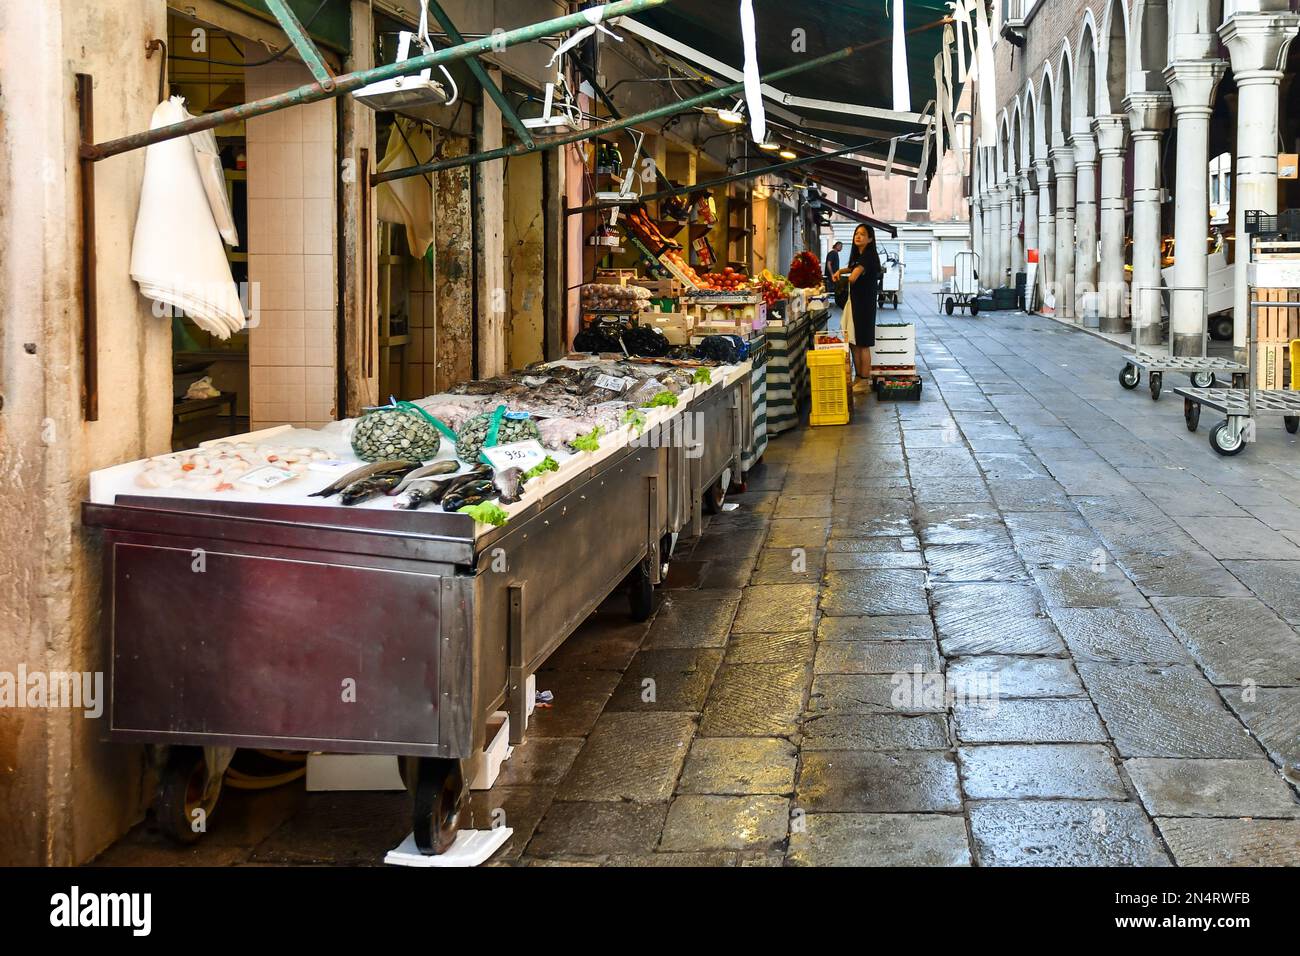 Un negozio di pesce con il pescato del giorno esposto sul marciapiede e un negozio di alimentari di fronte alla Loggia del mercato del pesce, San Polo, Venezia, Italia Foto Stock